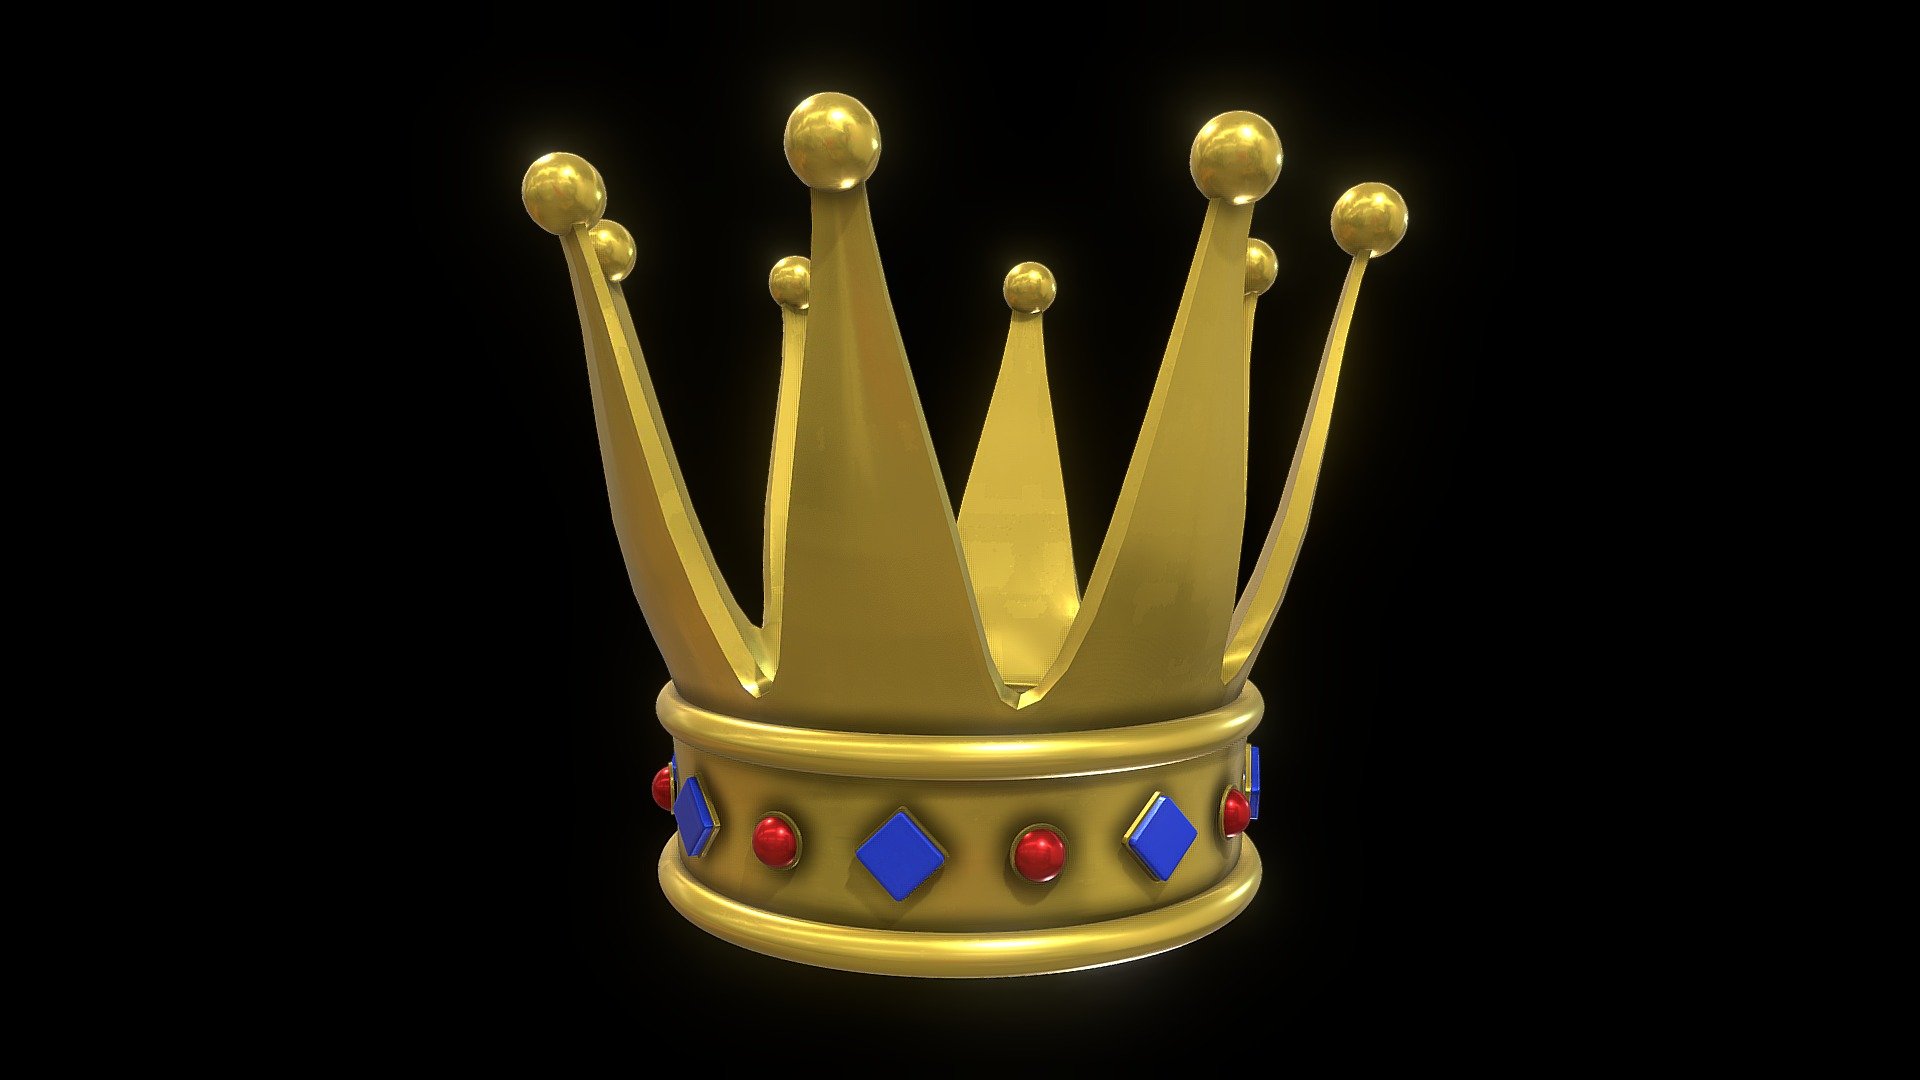 Crown lowpoly model - Crown - 3D model by dimmak 3d model